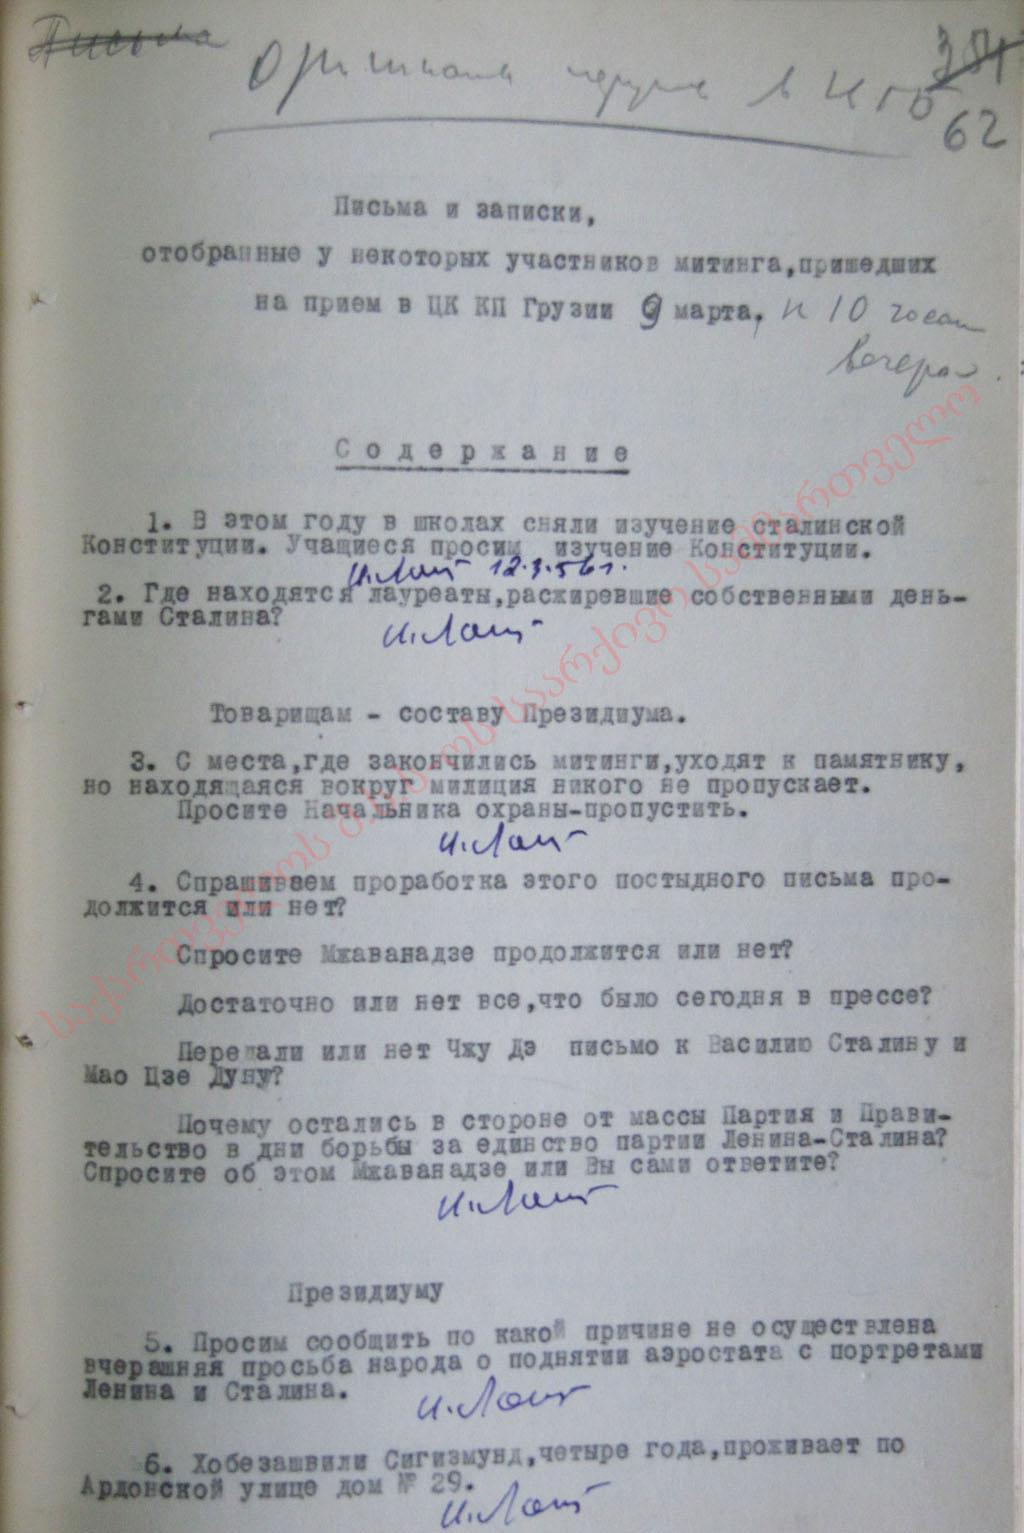 Письма и записки, отобранные у некоторых участников митинга, пришедших на приём в ЦК КП Грузии 9 марта 1956 г.